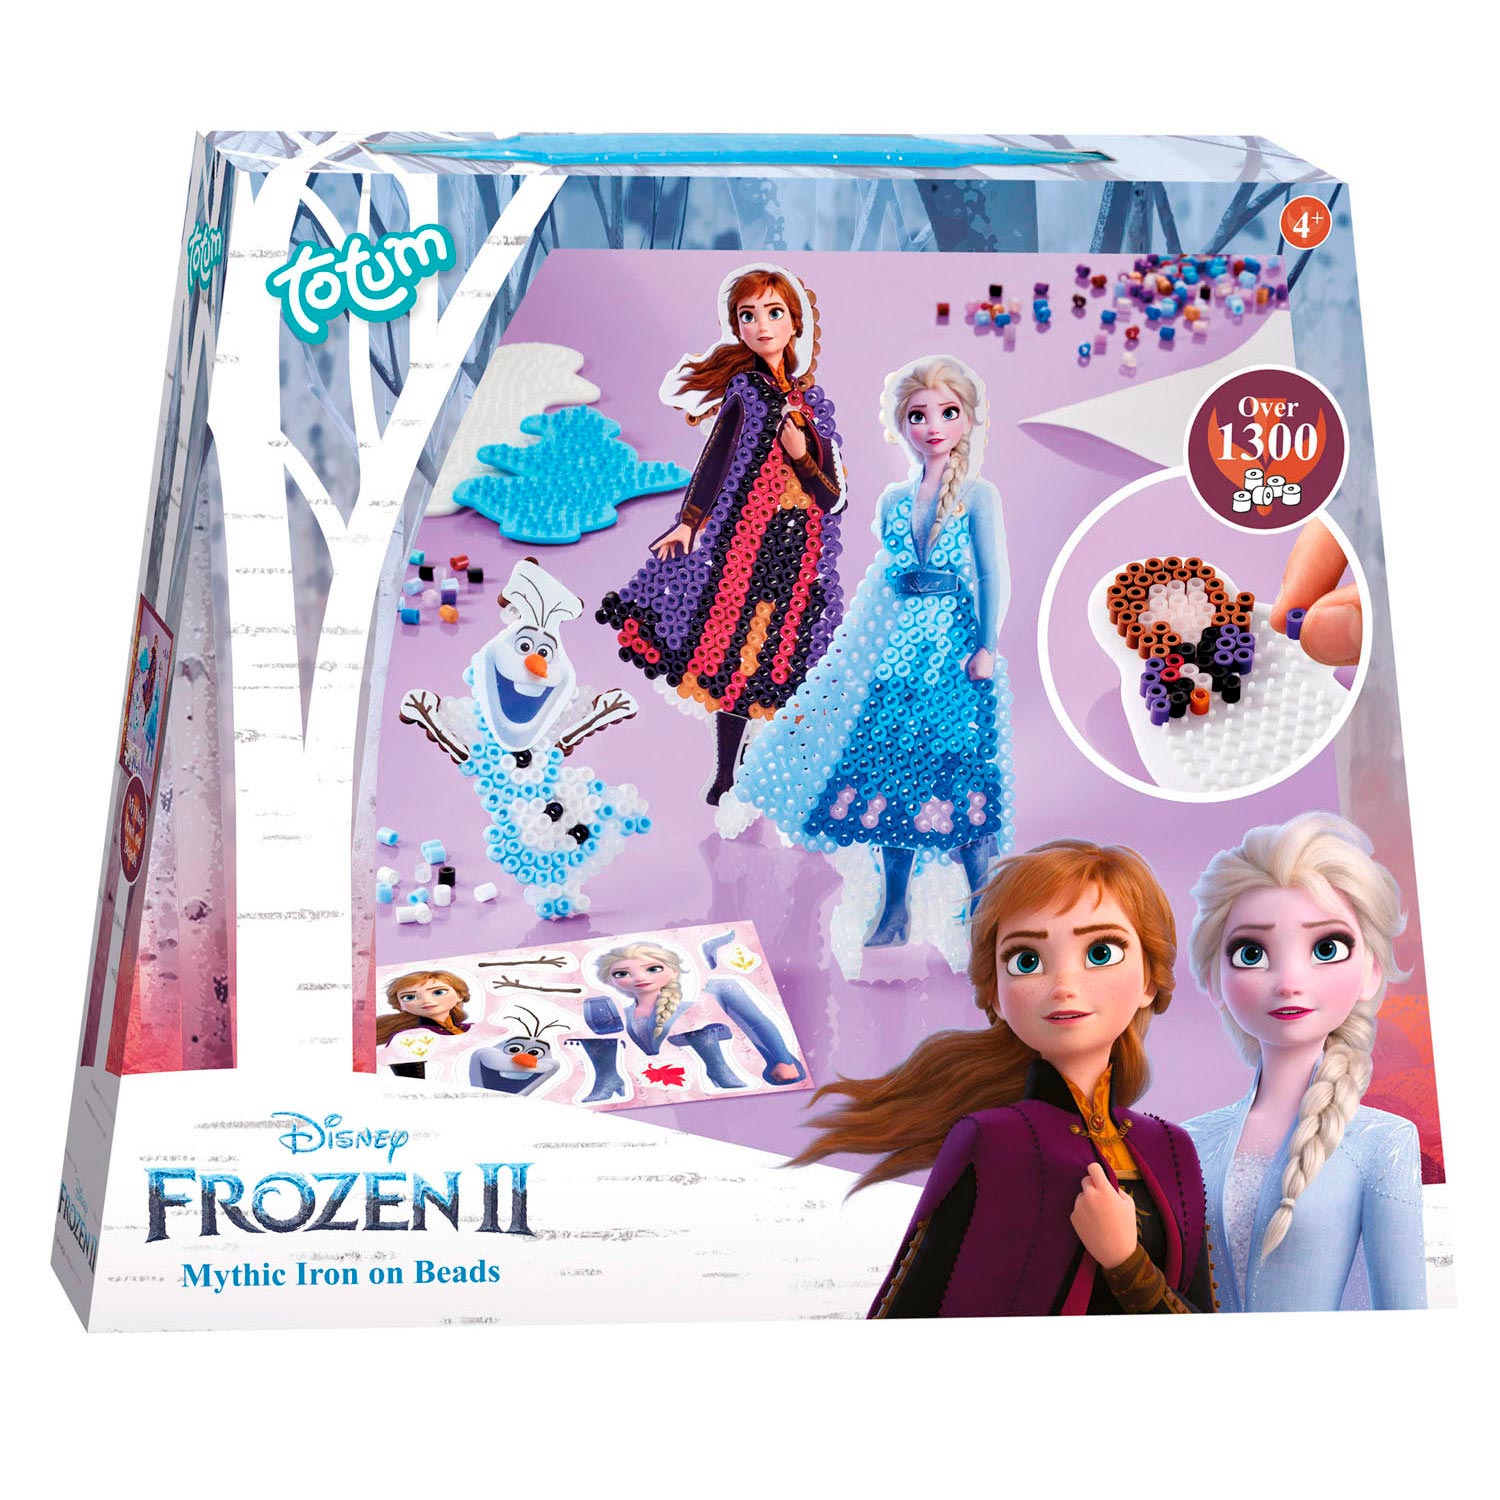 methaan Mangel vacht Totum Disney Frozen 2 - Iron-on bead set | Thimble Toys